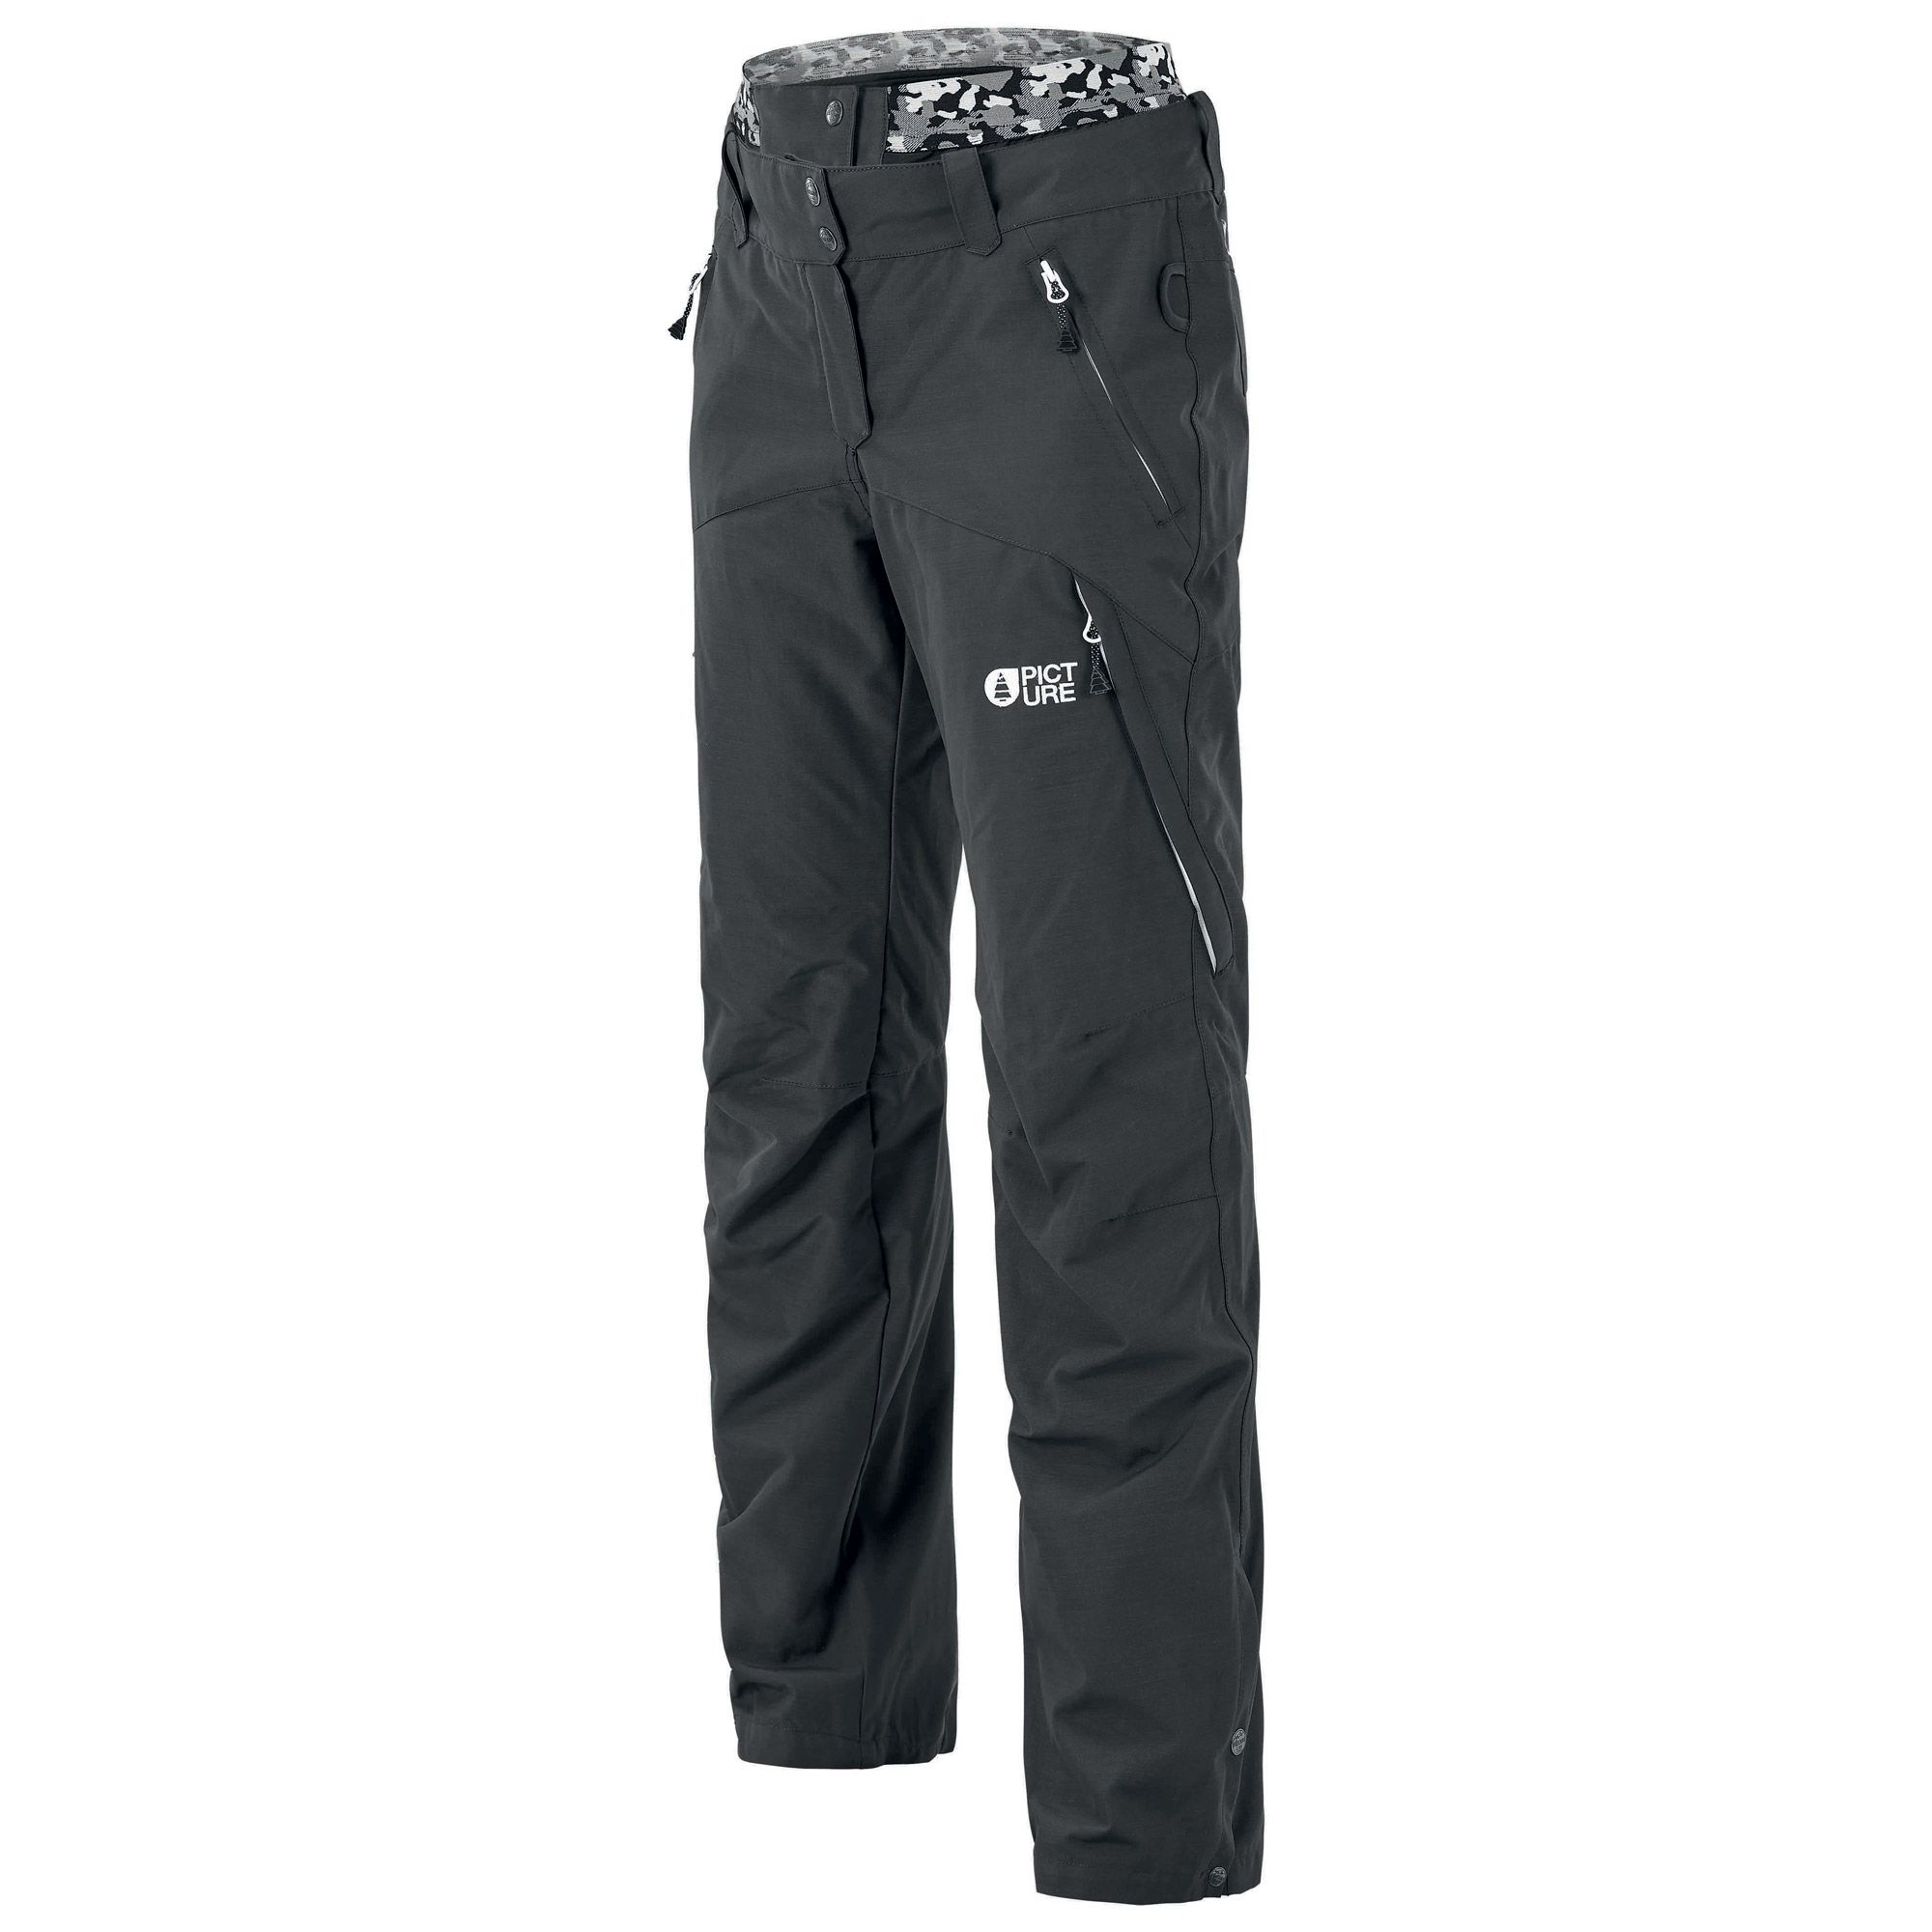 Pantalon de Ski Treva Pant - Black